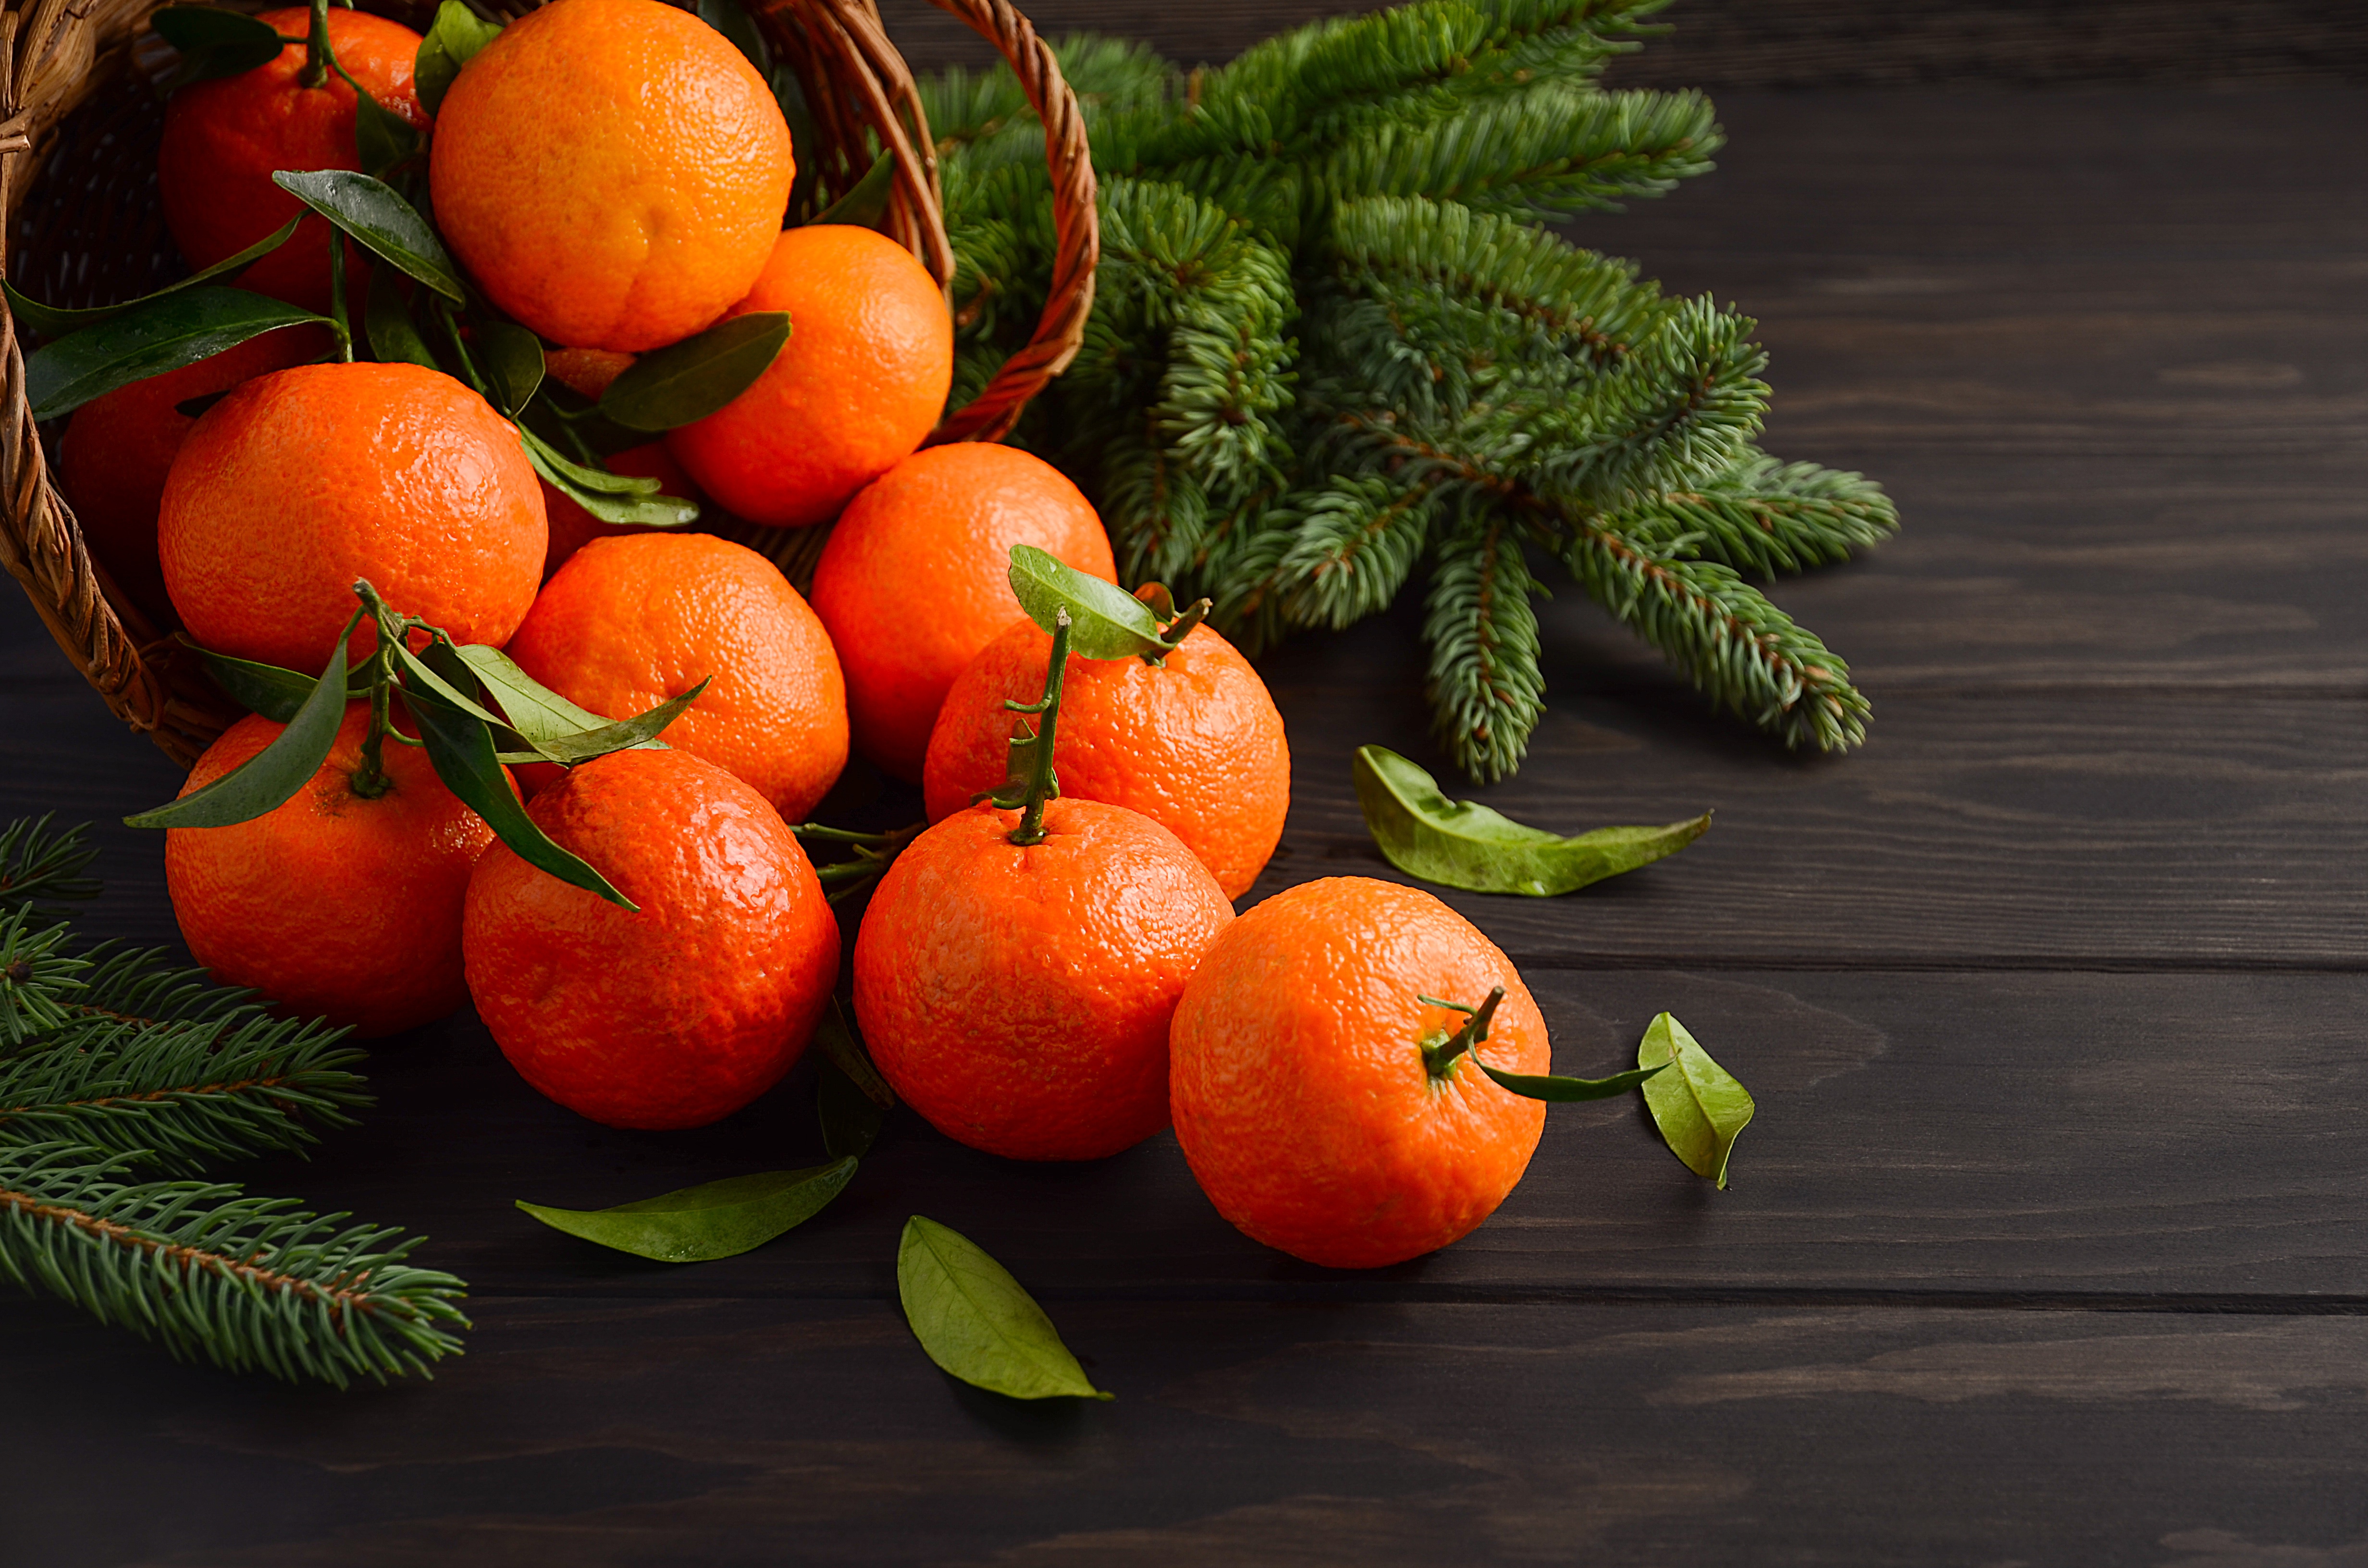 25 мандаринов. Egyptian Citrus мандарины. Мандарины новый год. Мандарины на новогоднем столе. Мандарины и елка.